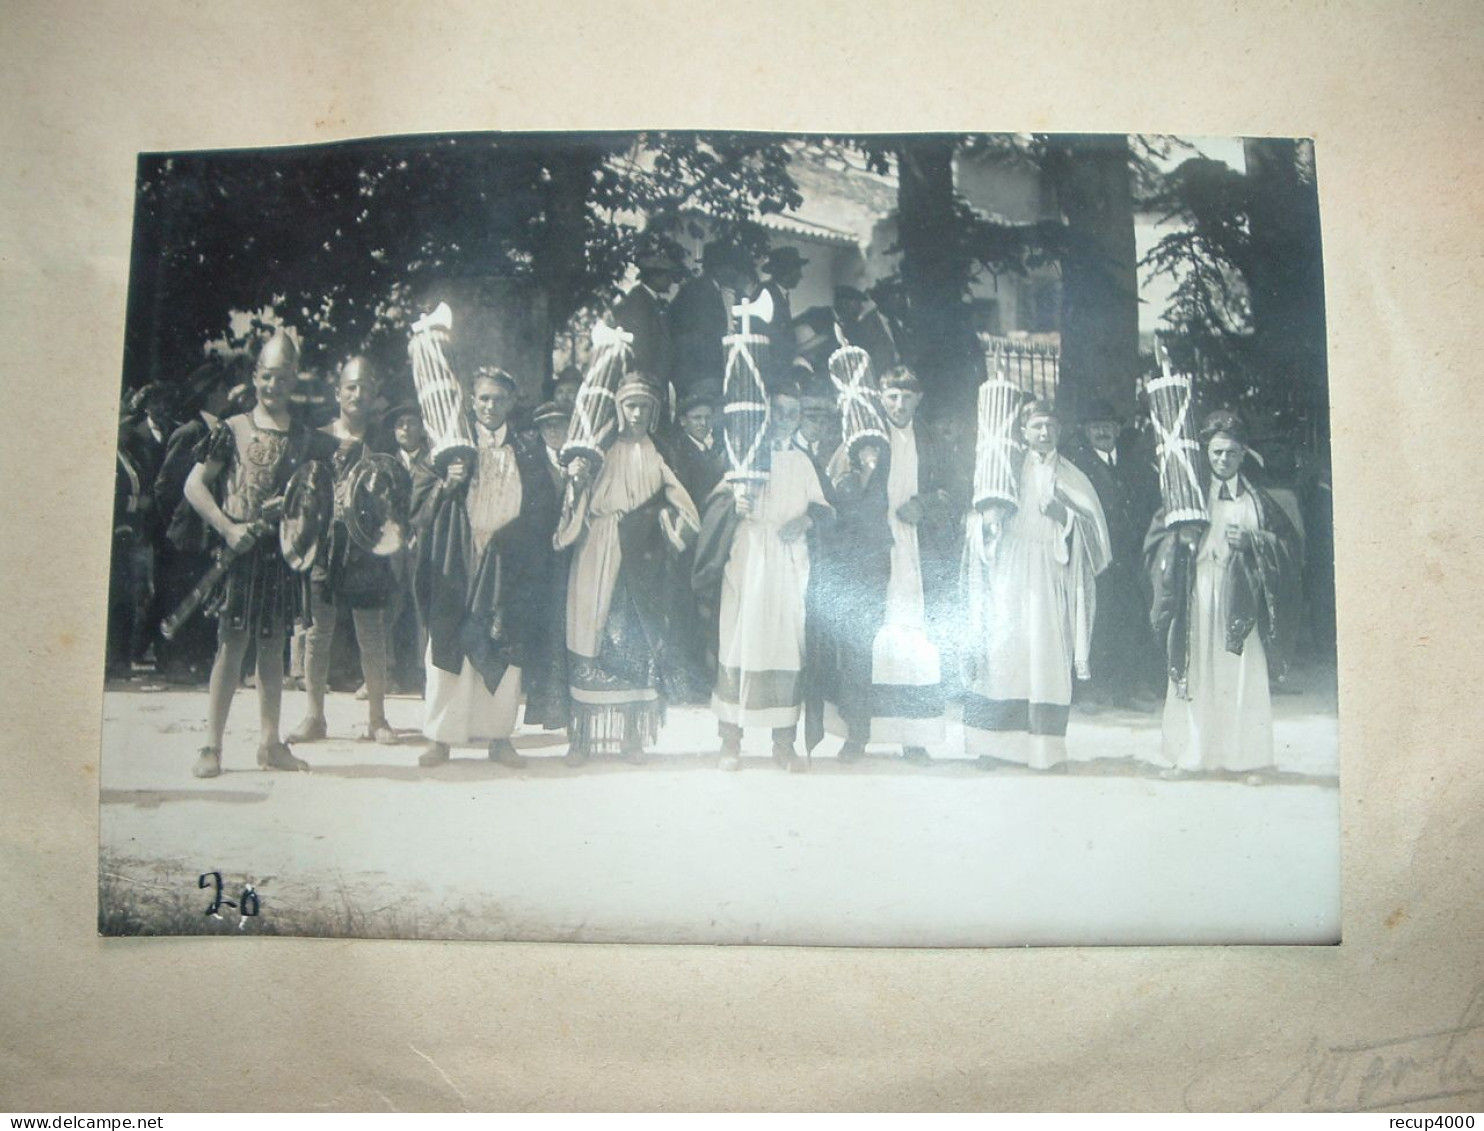 31 AURIAC SUR VENDINELLE album souvenir cavalcade 1927 photographe merlin toulouse  42 photos   42scans